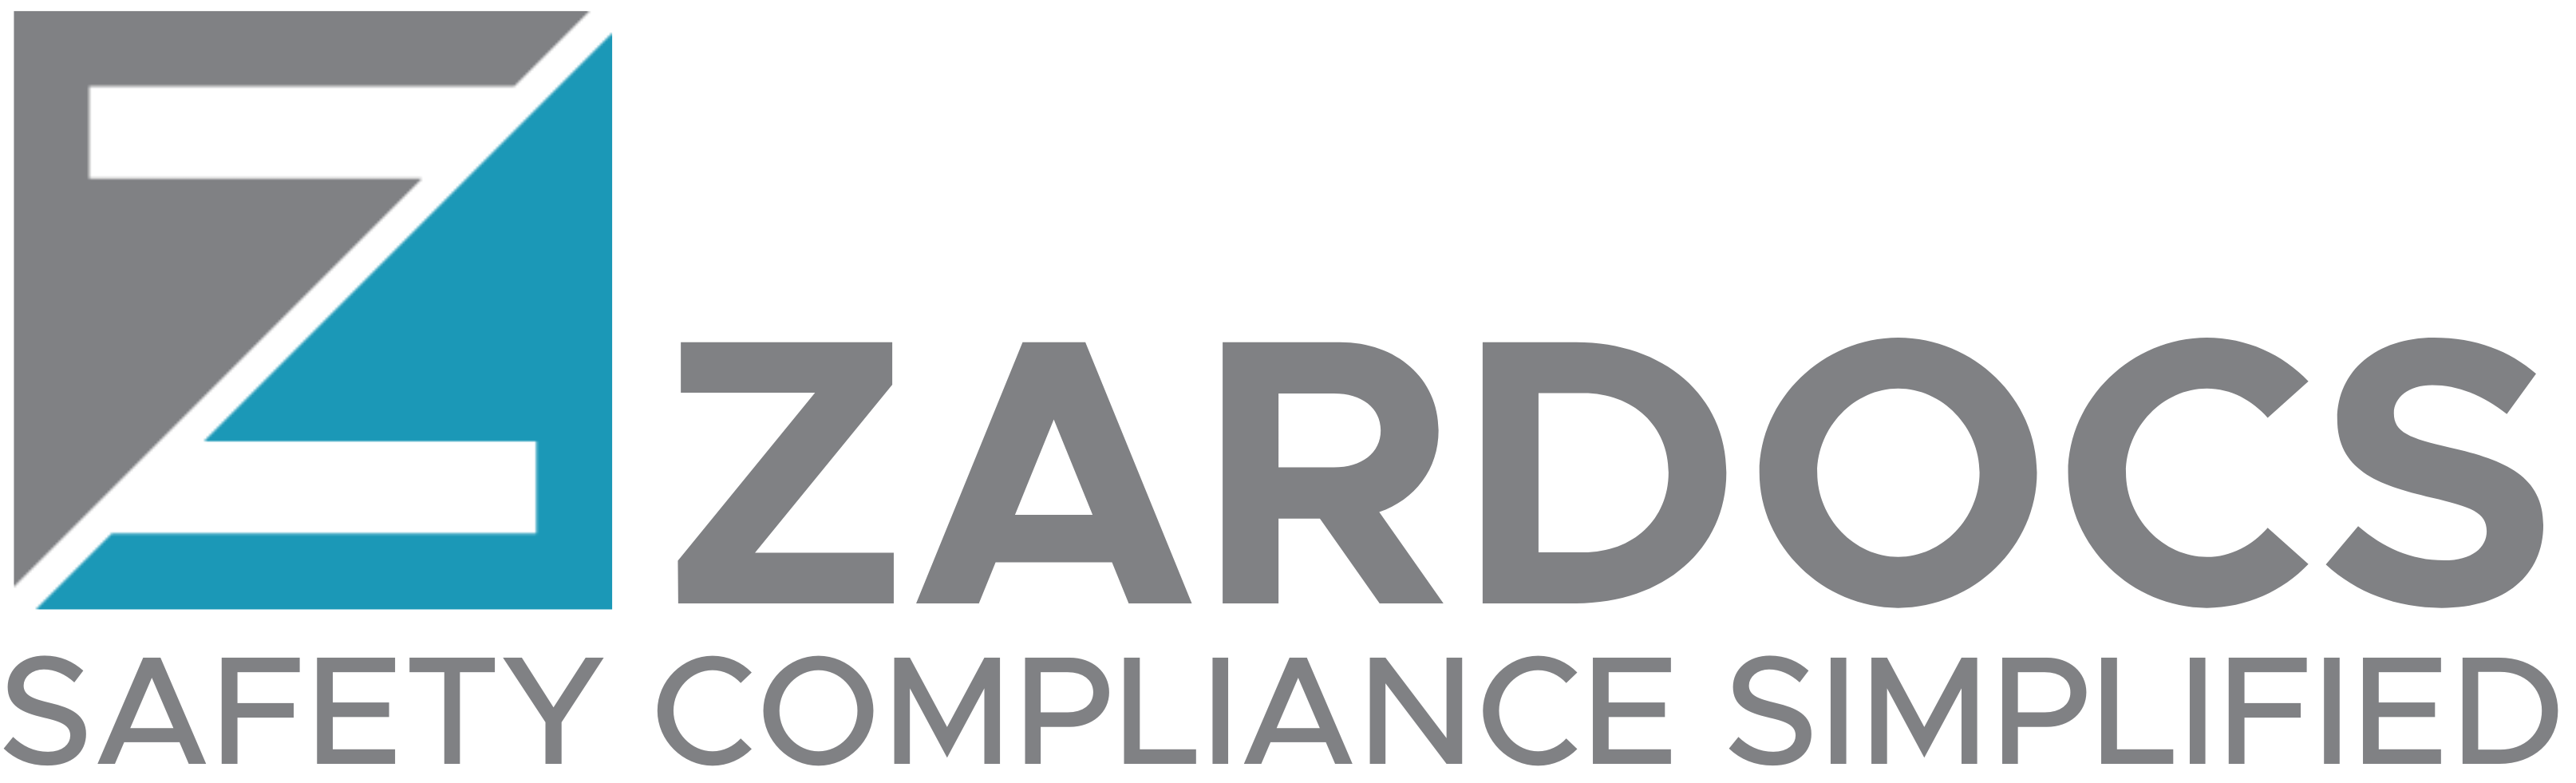 137332703 zardocs compliance simplified large